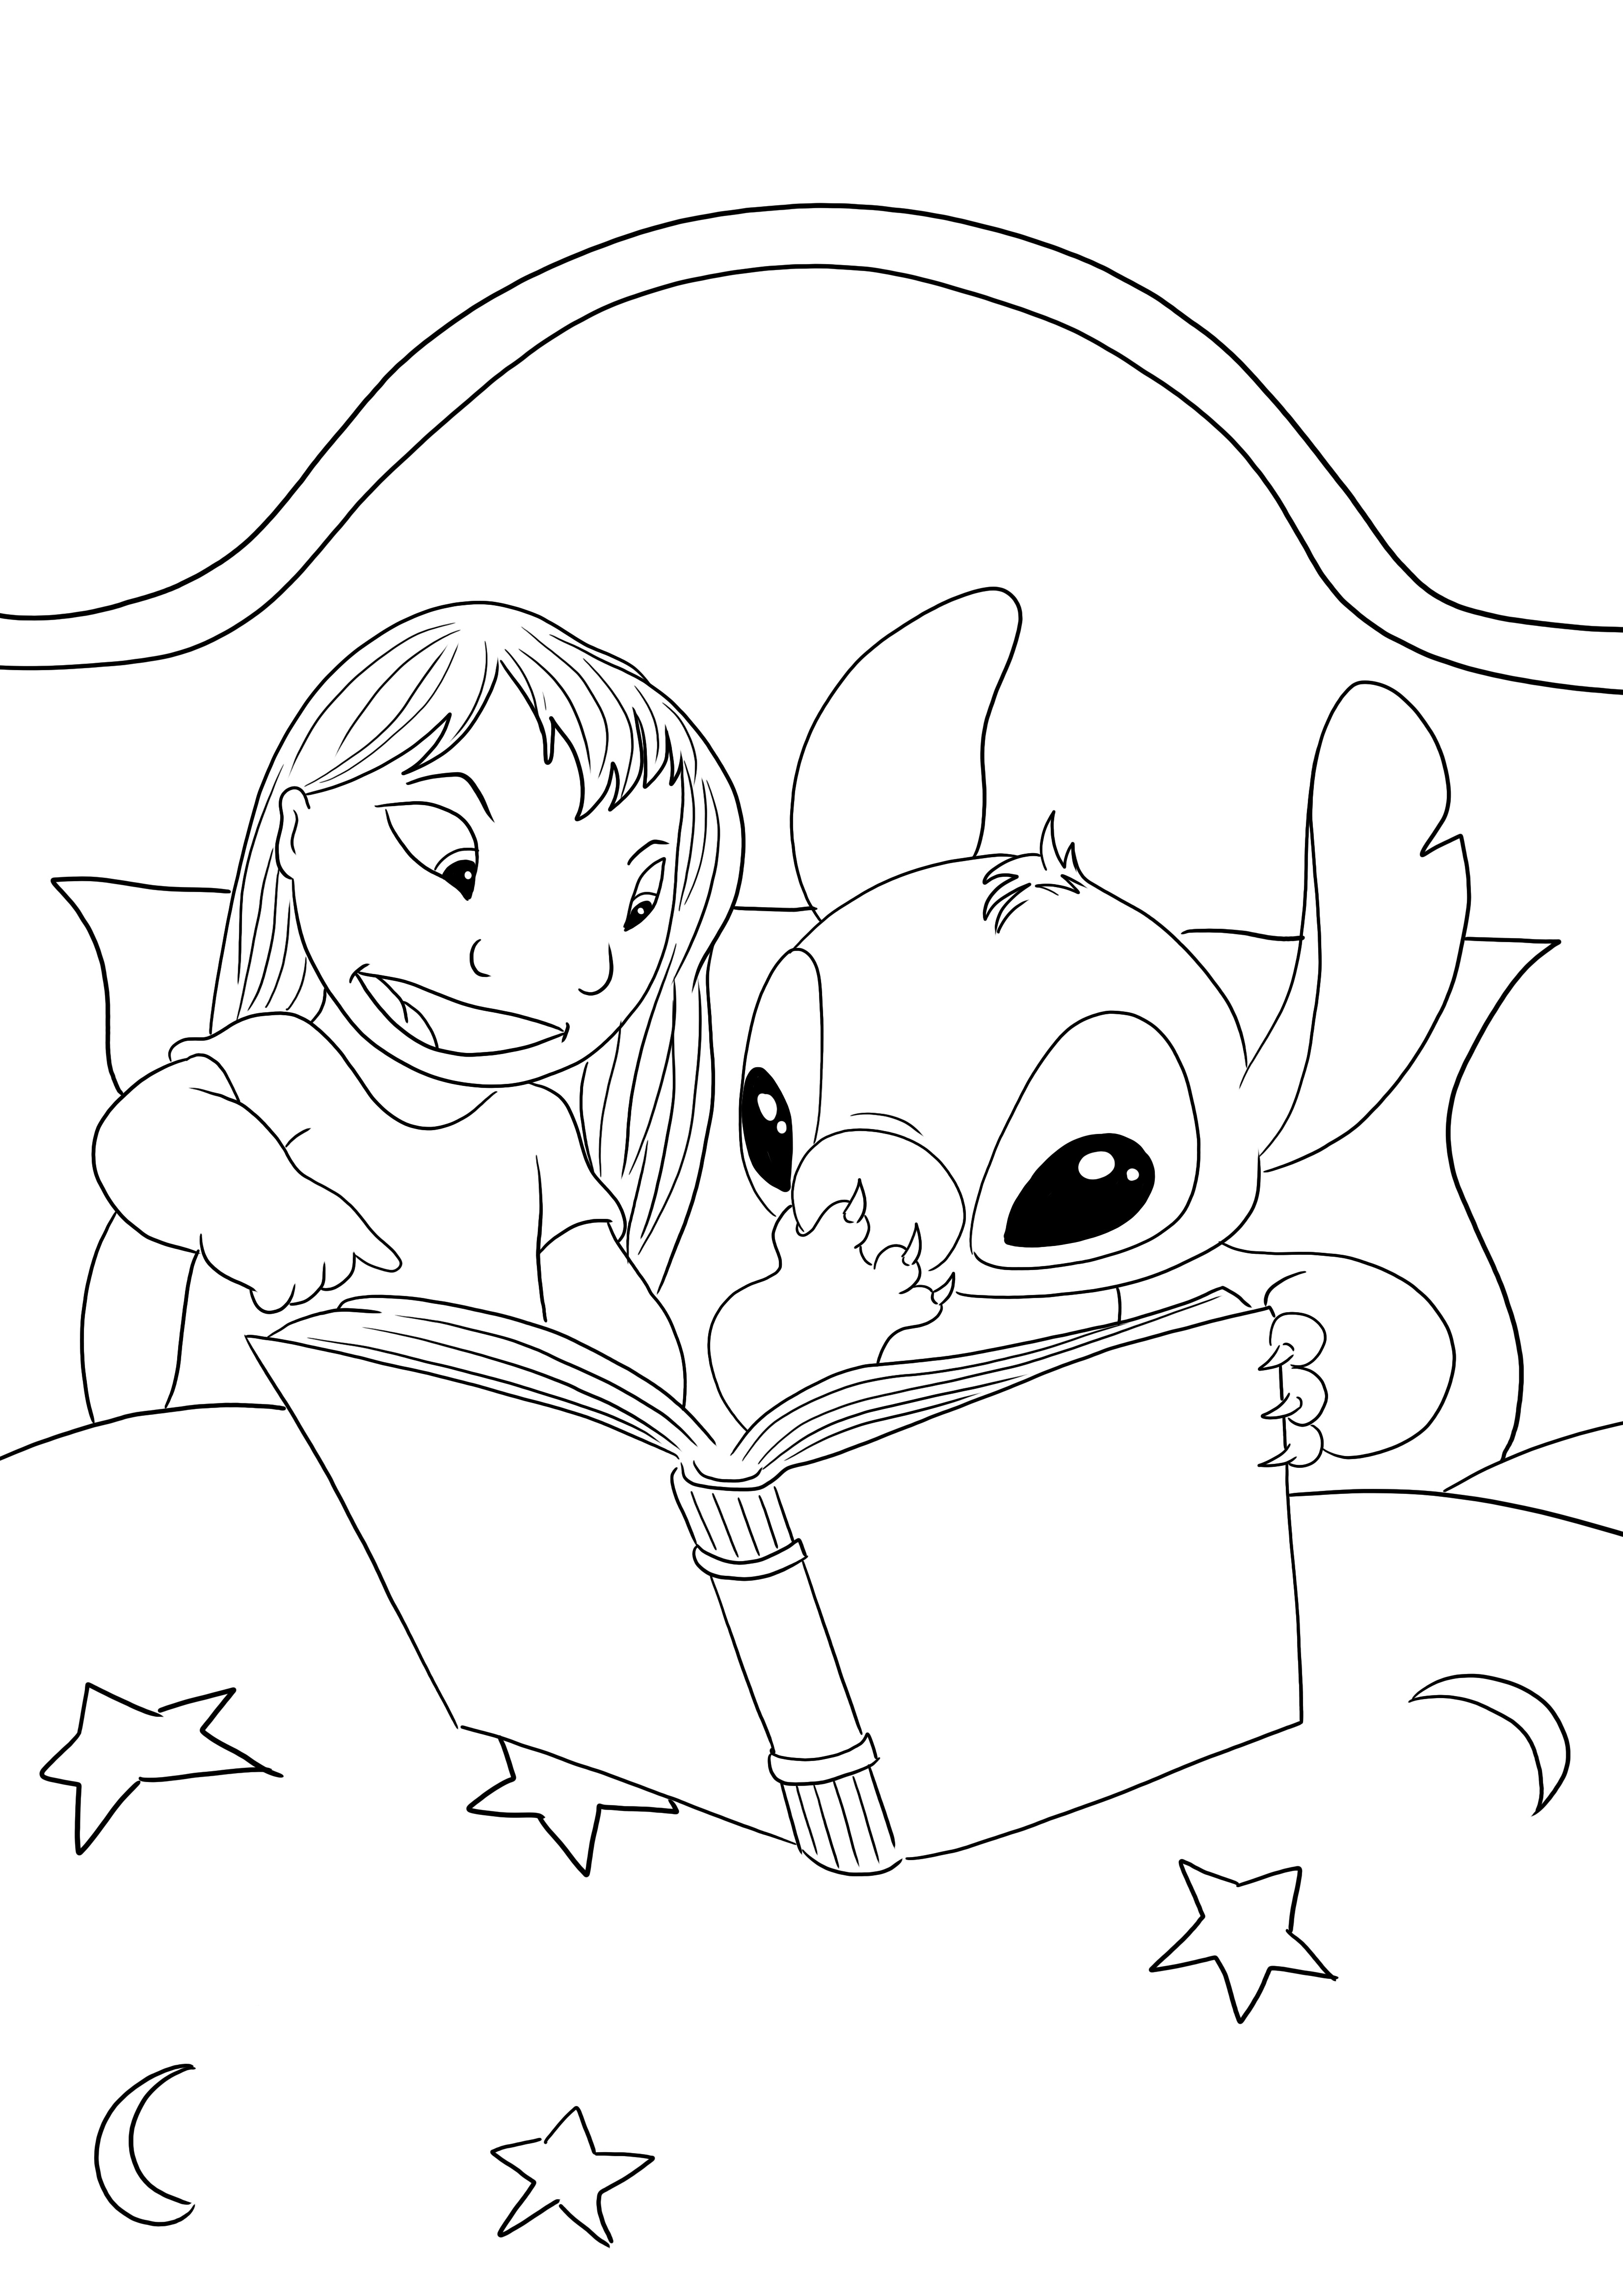 Lilo&Stitch legge la storia della notte per colorare e stampare l'immagine gratis